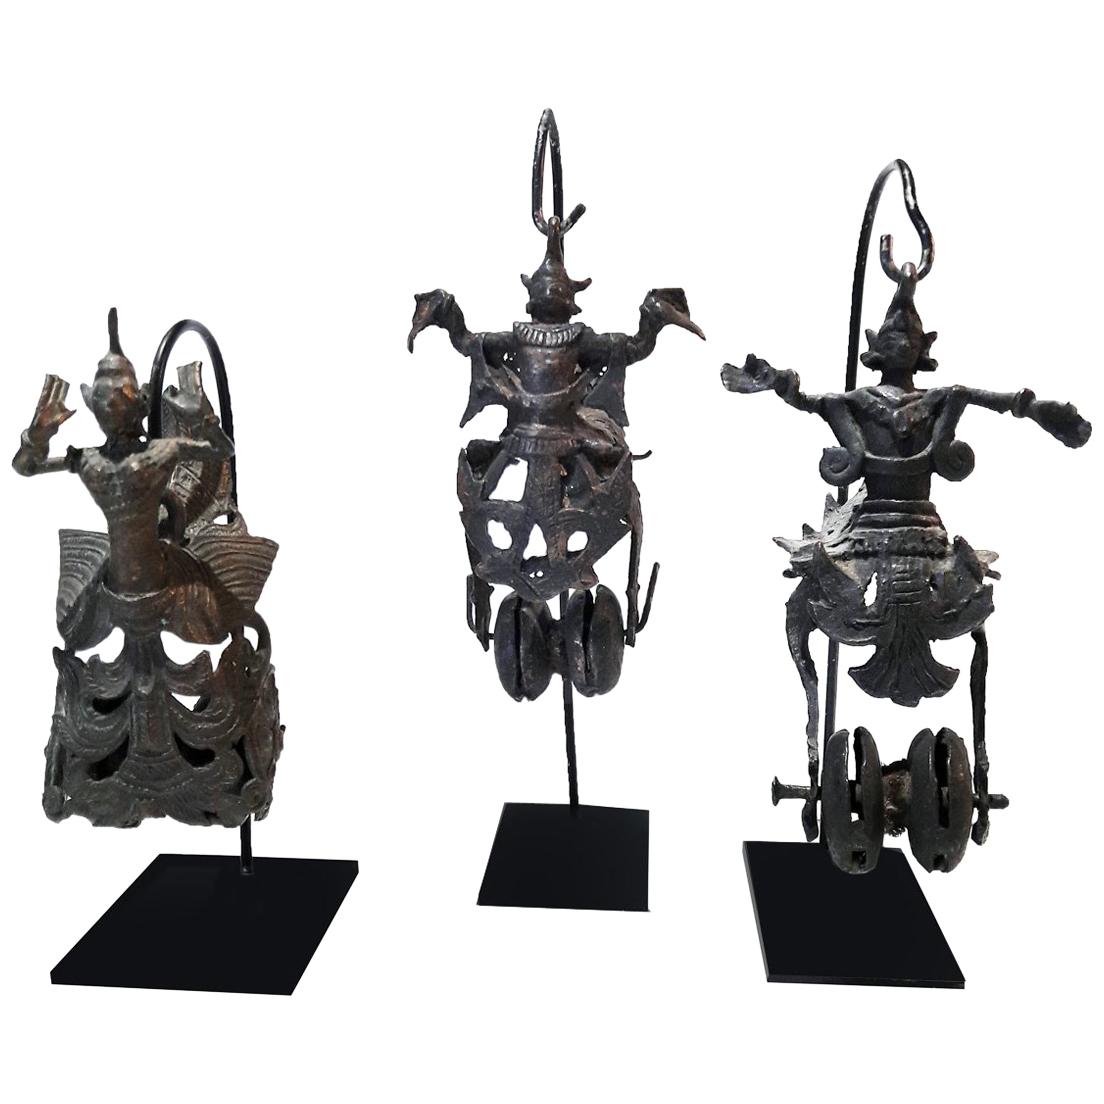 Hindu Deity Miniature Sculptures, 19th Century